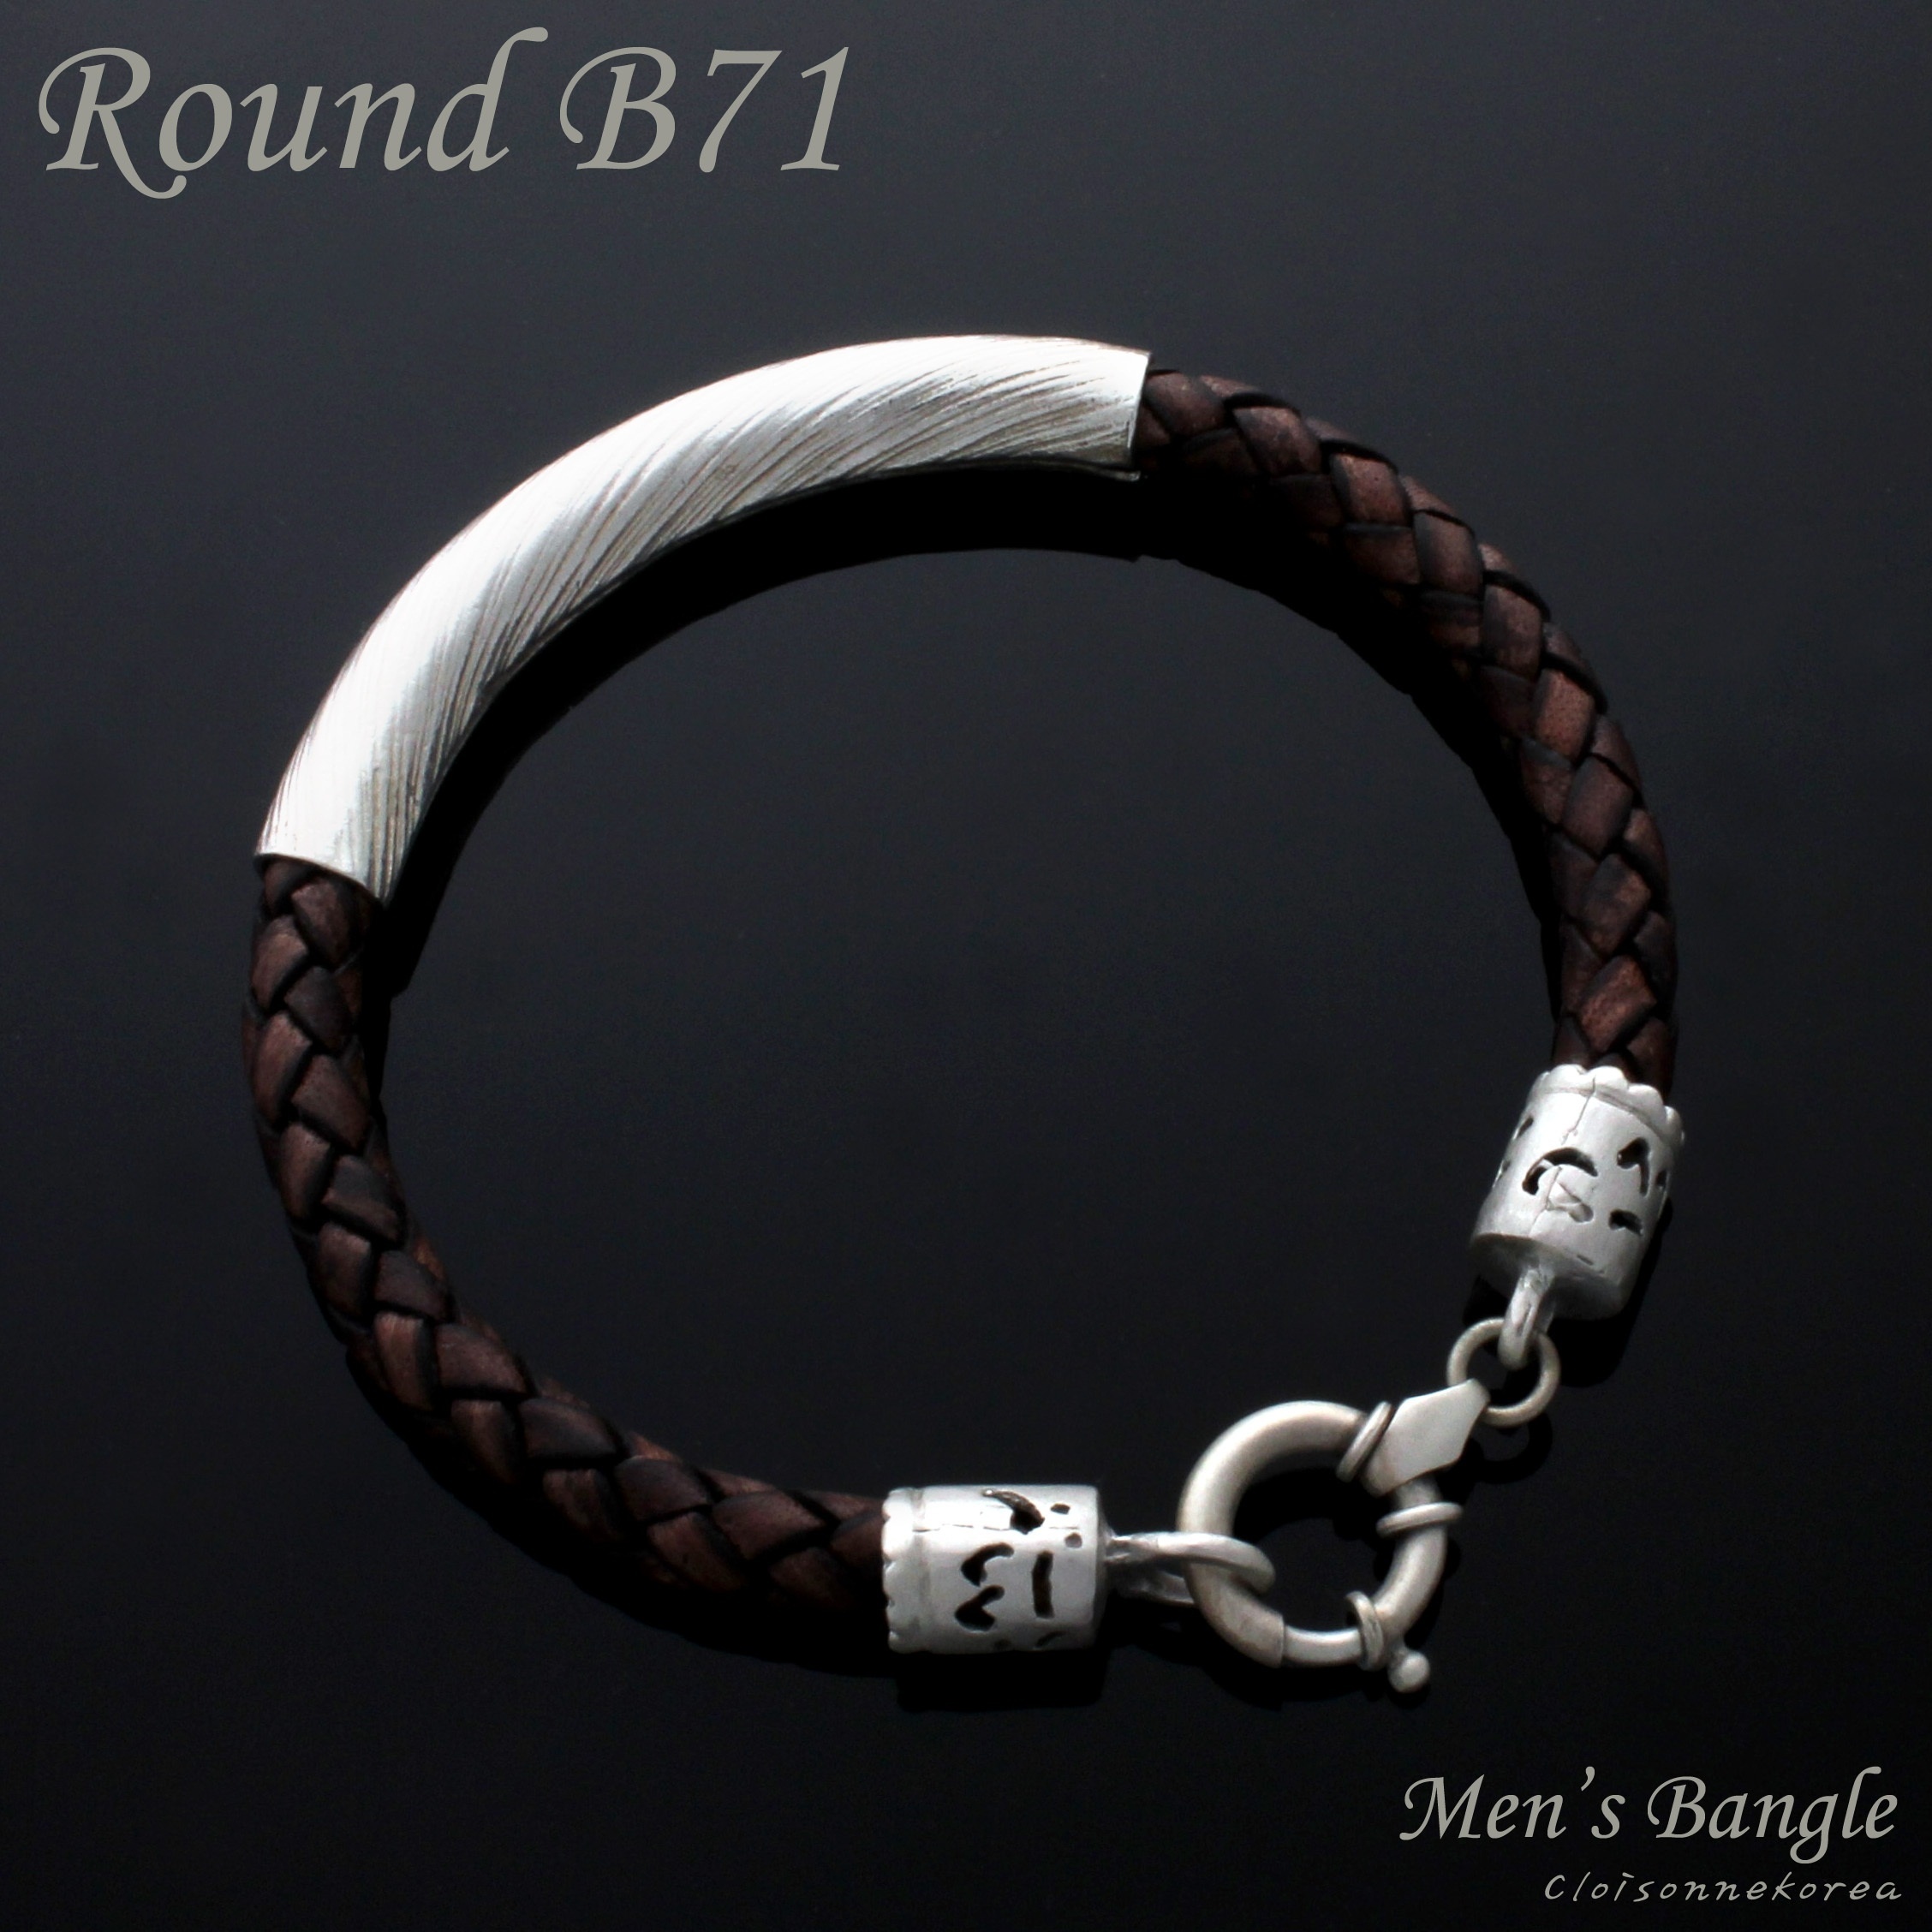 【クリックで詳細表示】[Cloisonnekorea]Bracelet for Men/Braided leather/Silver rondelle/Round B71